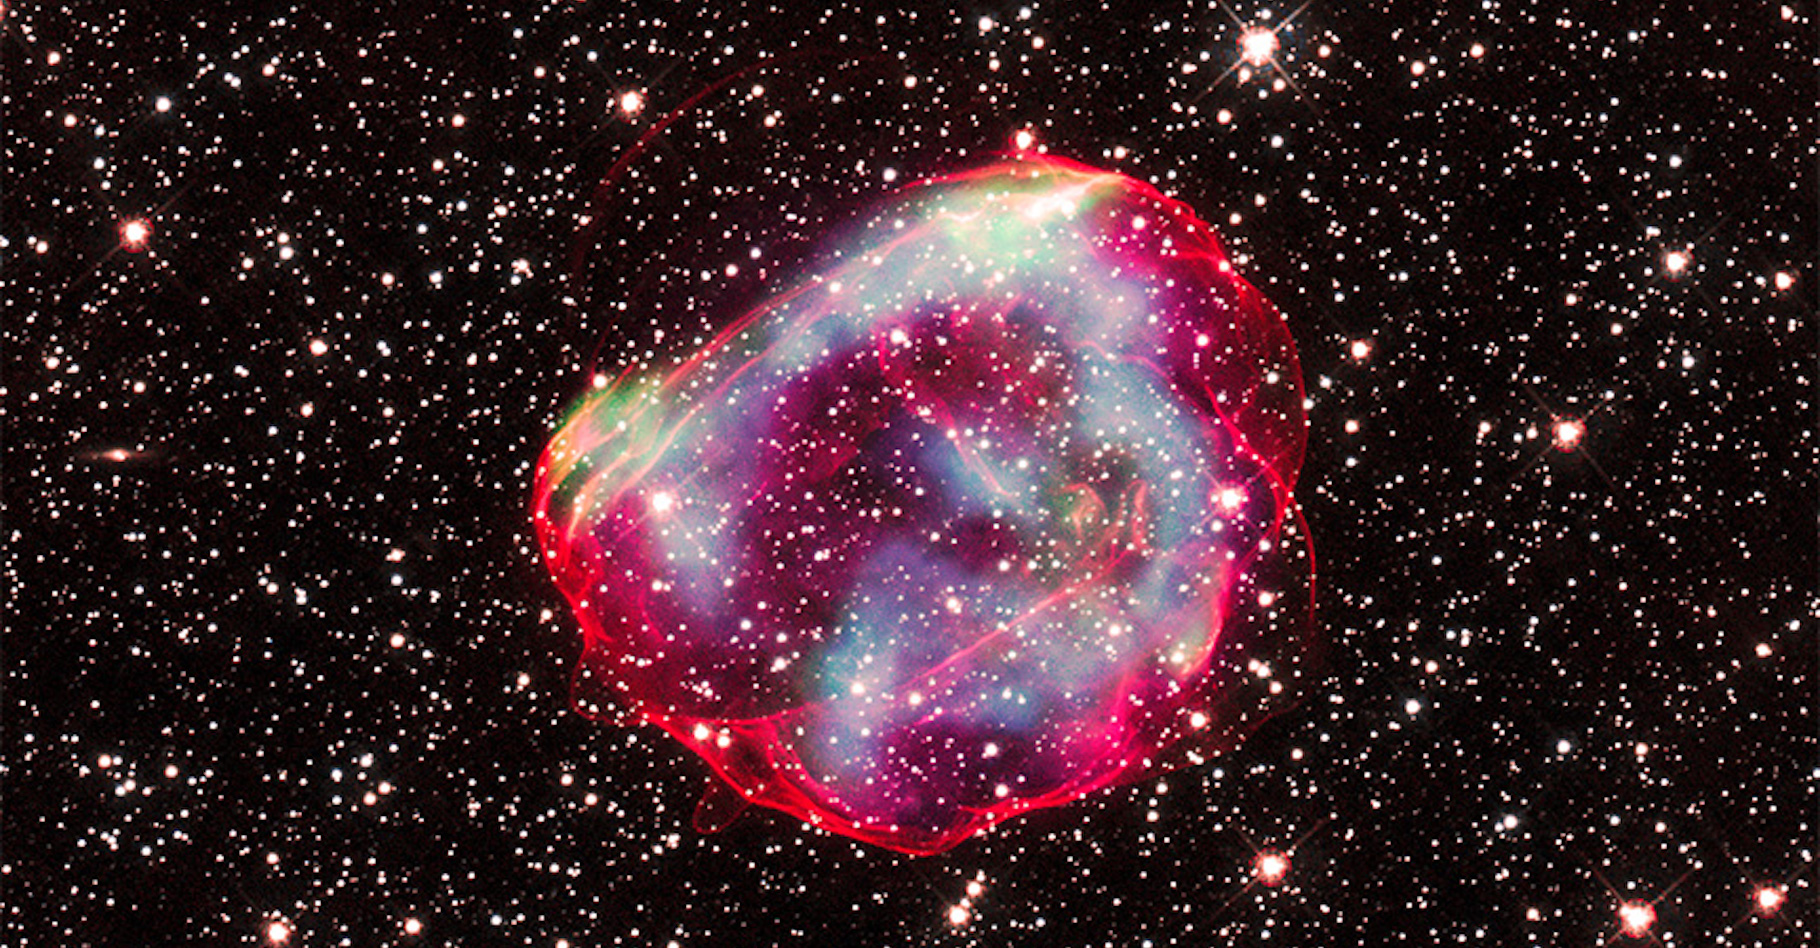 Ces traînées de gaz sont celles laissées par la supernova SNR 0519, dans la galaxie du Grand Nuage de Magellan, voisine de la nôtre. On y devine les coquilles rouges restant de l’étoile naine blanche qui lui a donné naissance. Selon les chercheurs, sa lumière est arrivée jusqu’à notre Terre il y a environ 600 ans. © X-ray : Nasa/CXC/GSFC/B. J. Williams et al. ; Optical : Nasa/ESA/STScI